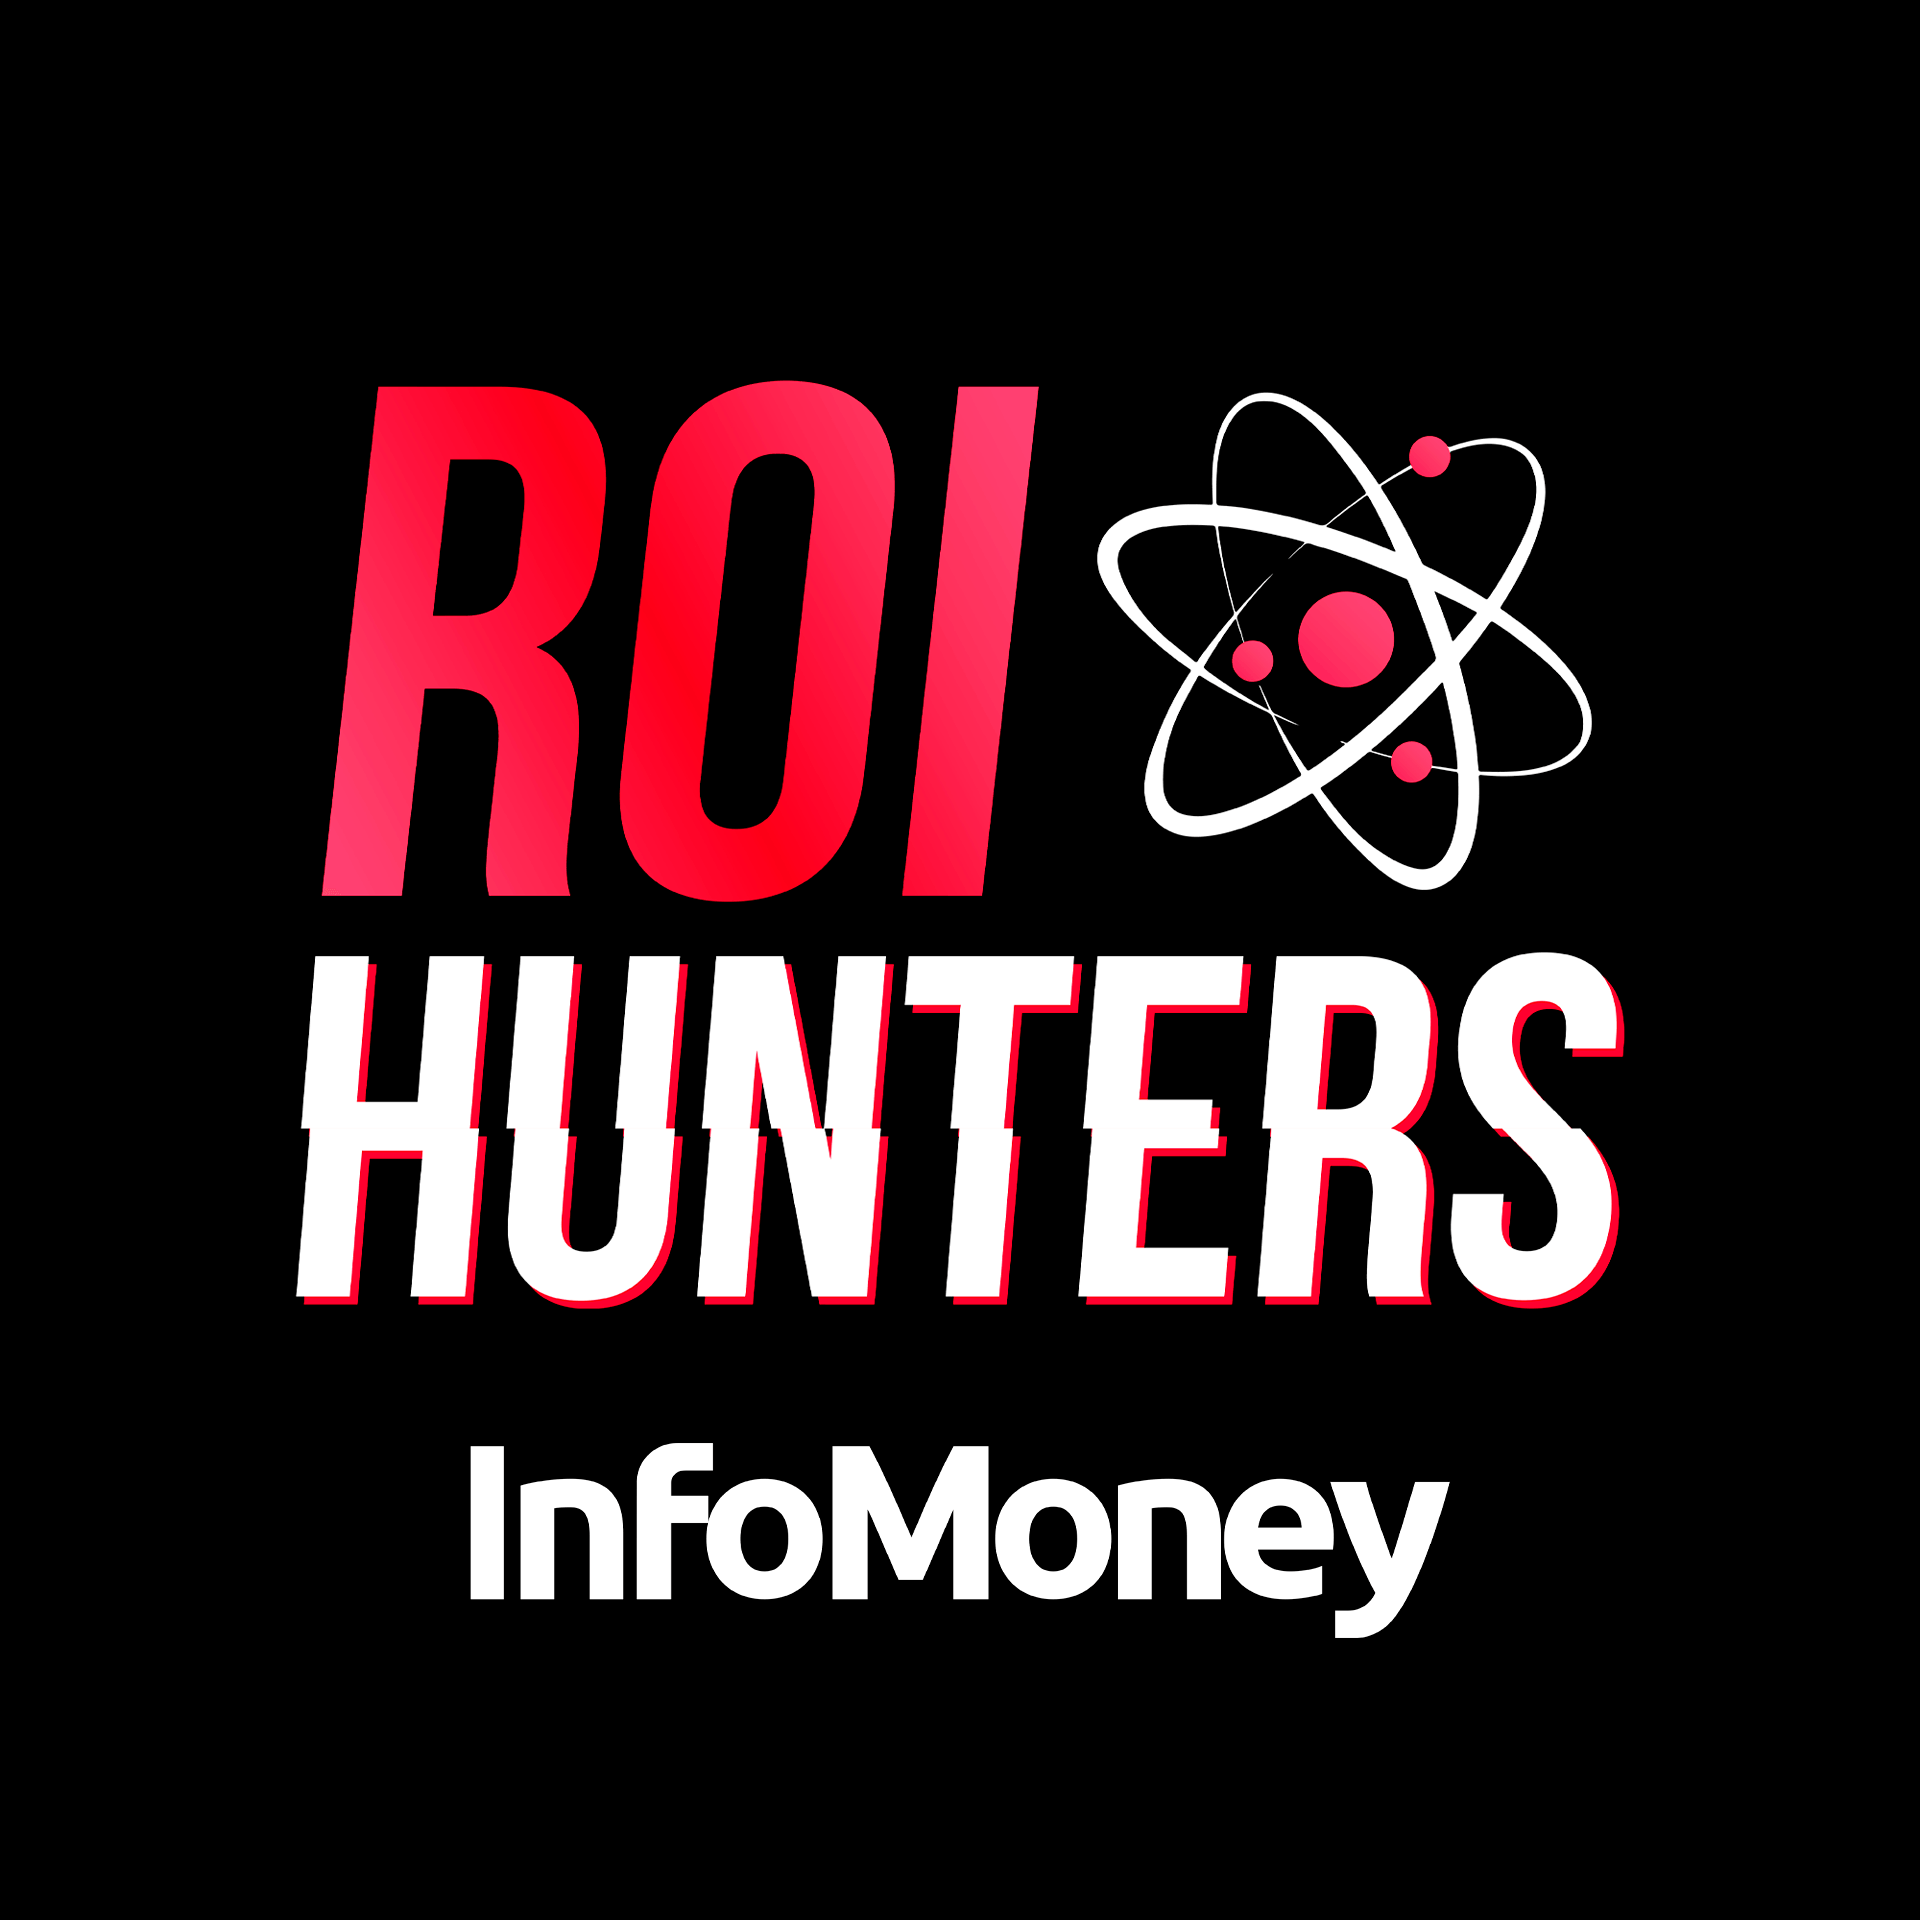 InfoMoney | 7 modelos de negócio para alavancar seu faturamento | ROI Hunters Ep. #136